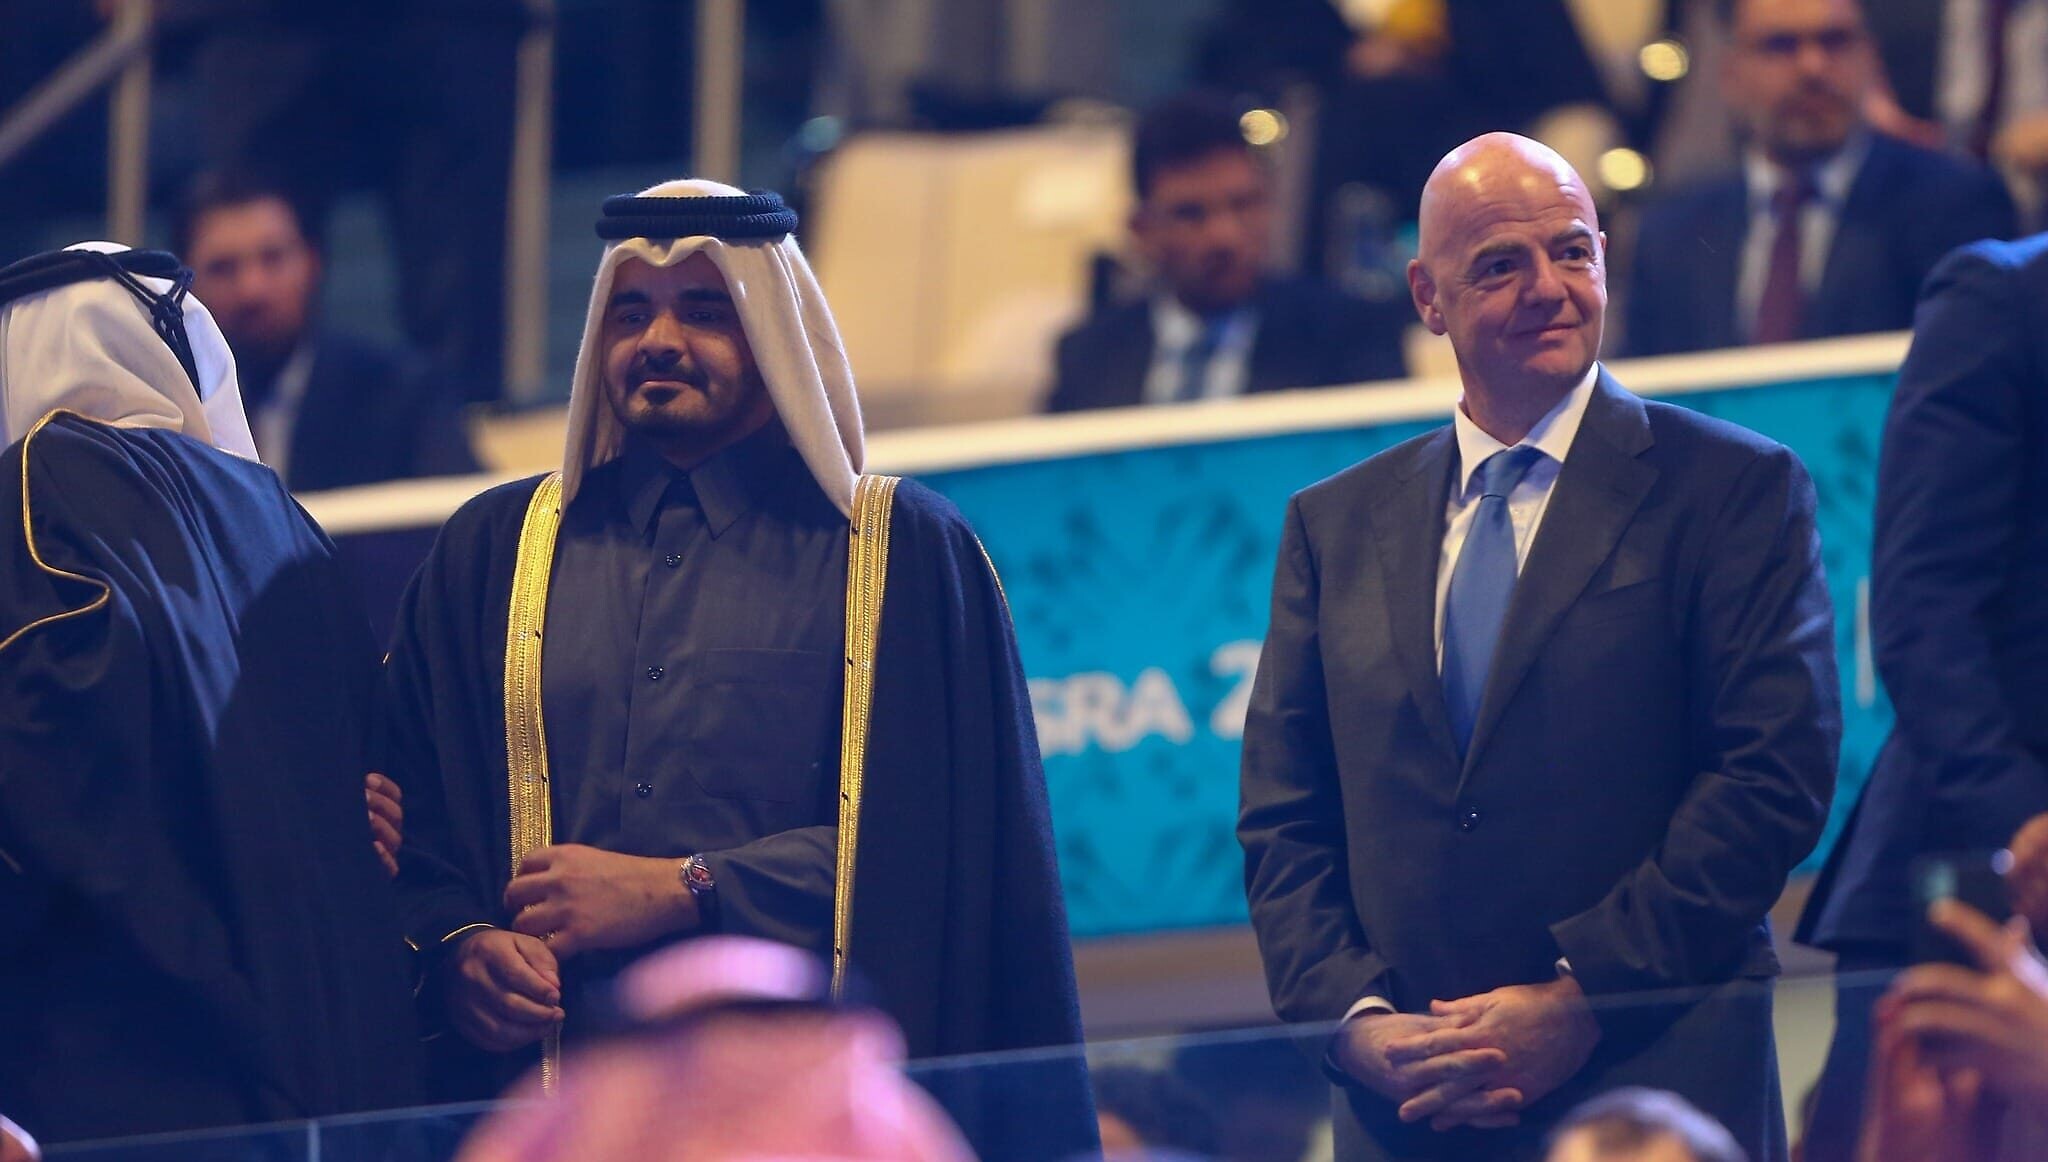 נשיא פיפ"א ג'ובאני אינפנטינו במשחק הפתיחה של "גביע המפרץ הערבי", 6 בינואר 2023 (צילום: מתוך עמוד הפייסבוק הרשמי של AGCFF)